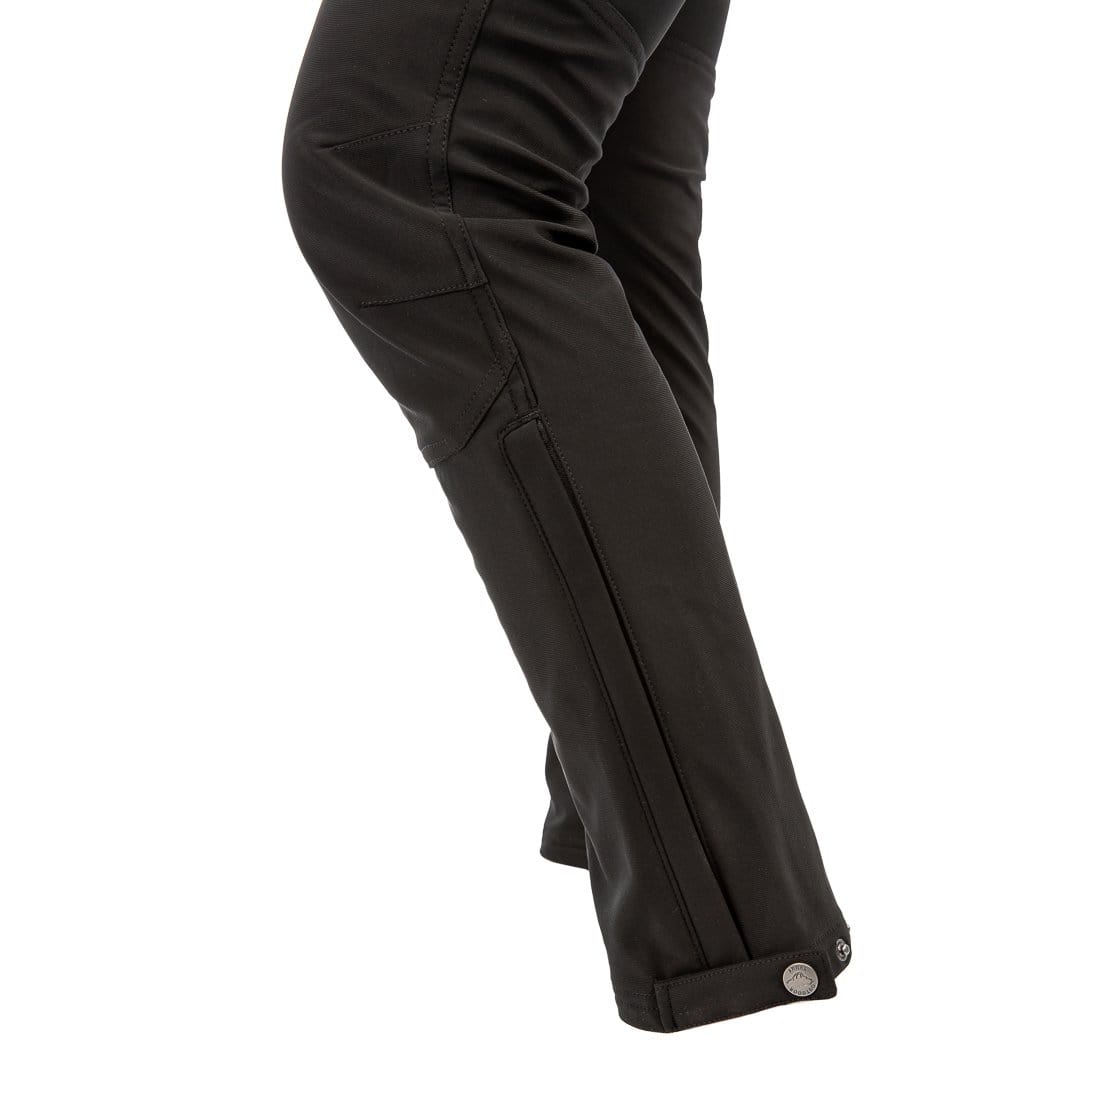 Tall Victoria High Waisted Dress Pants - Black | Fashion Nova,  Career/Office | Fashion Nova